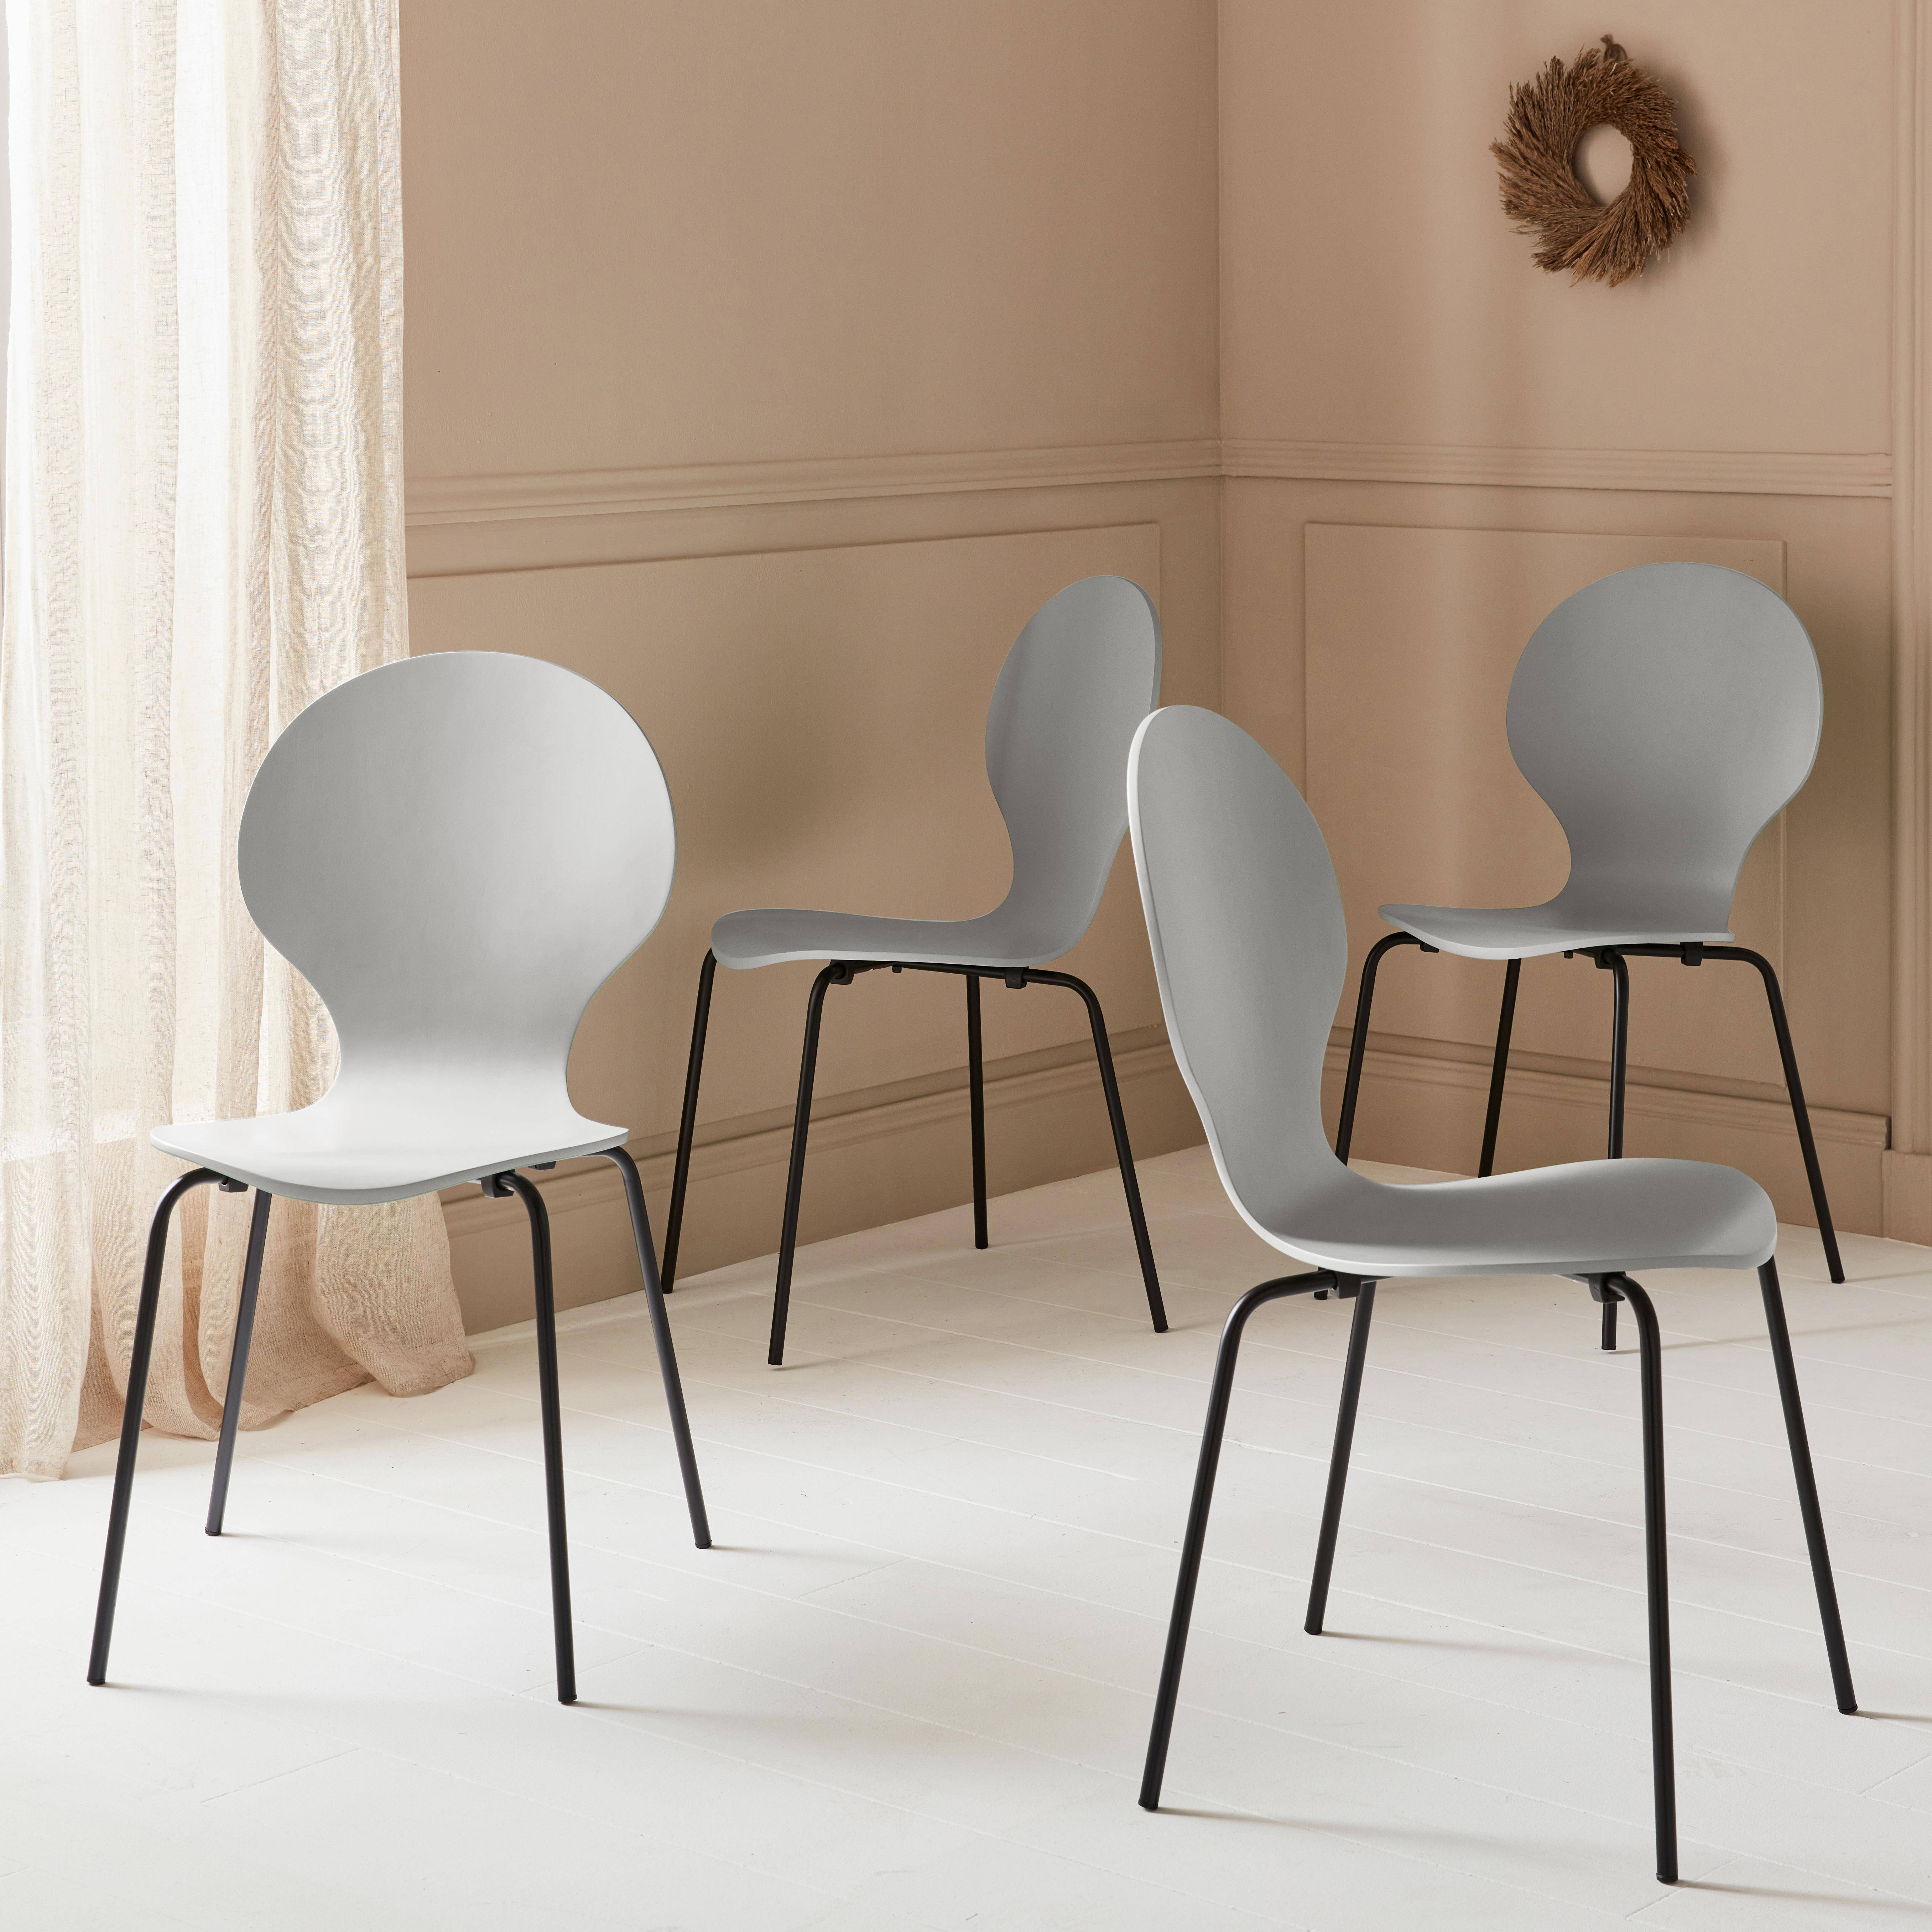 Set di 4 sedie grigio retro impilabili, legno di hevea e compensato, gambe in acciaio, Naomi, L 43 x P 48 x H 87cm Photo1